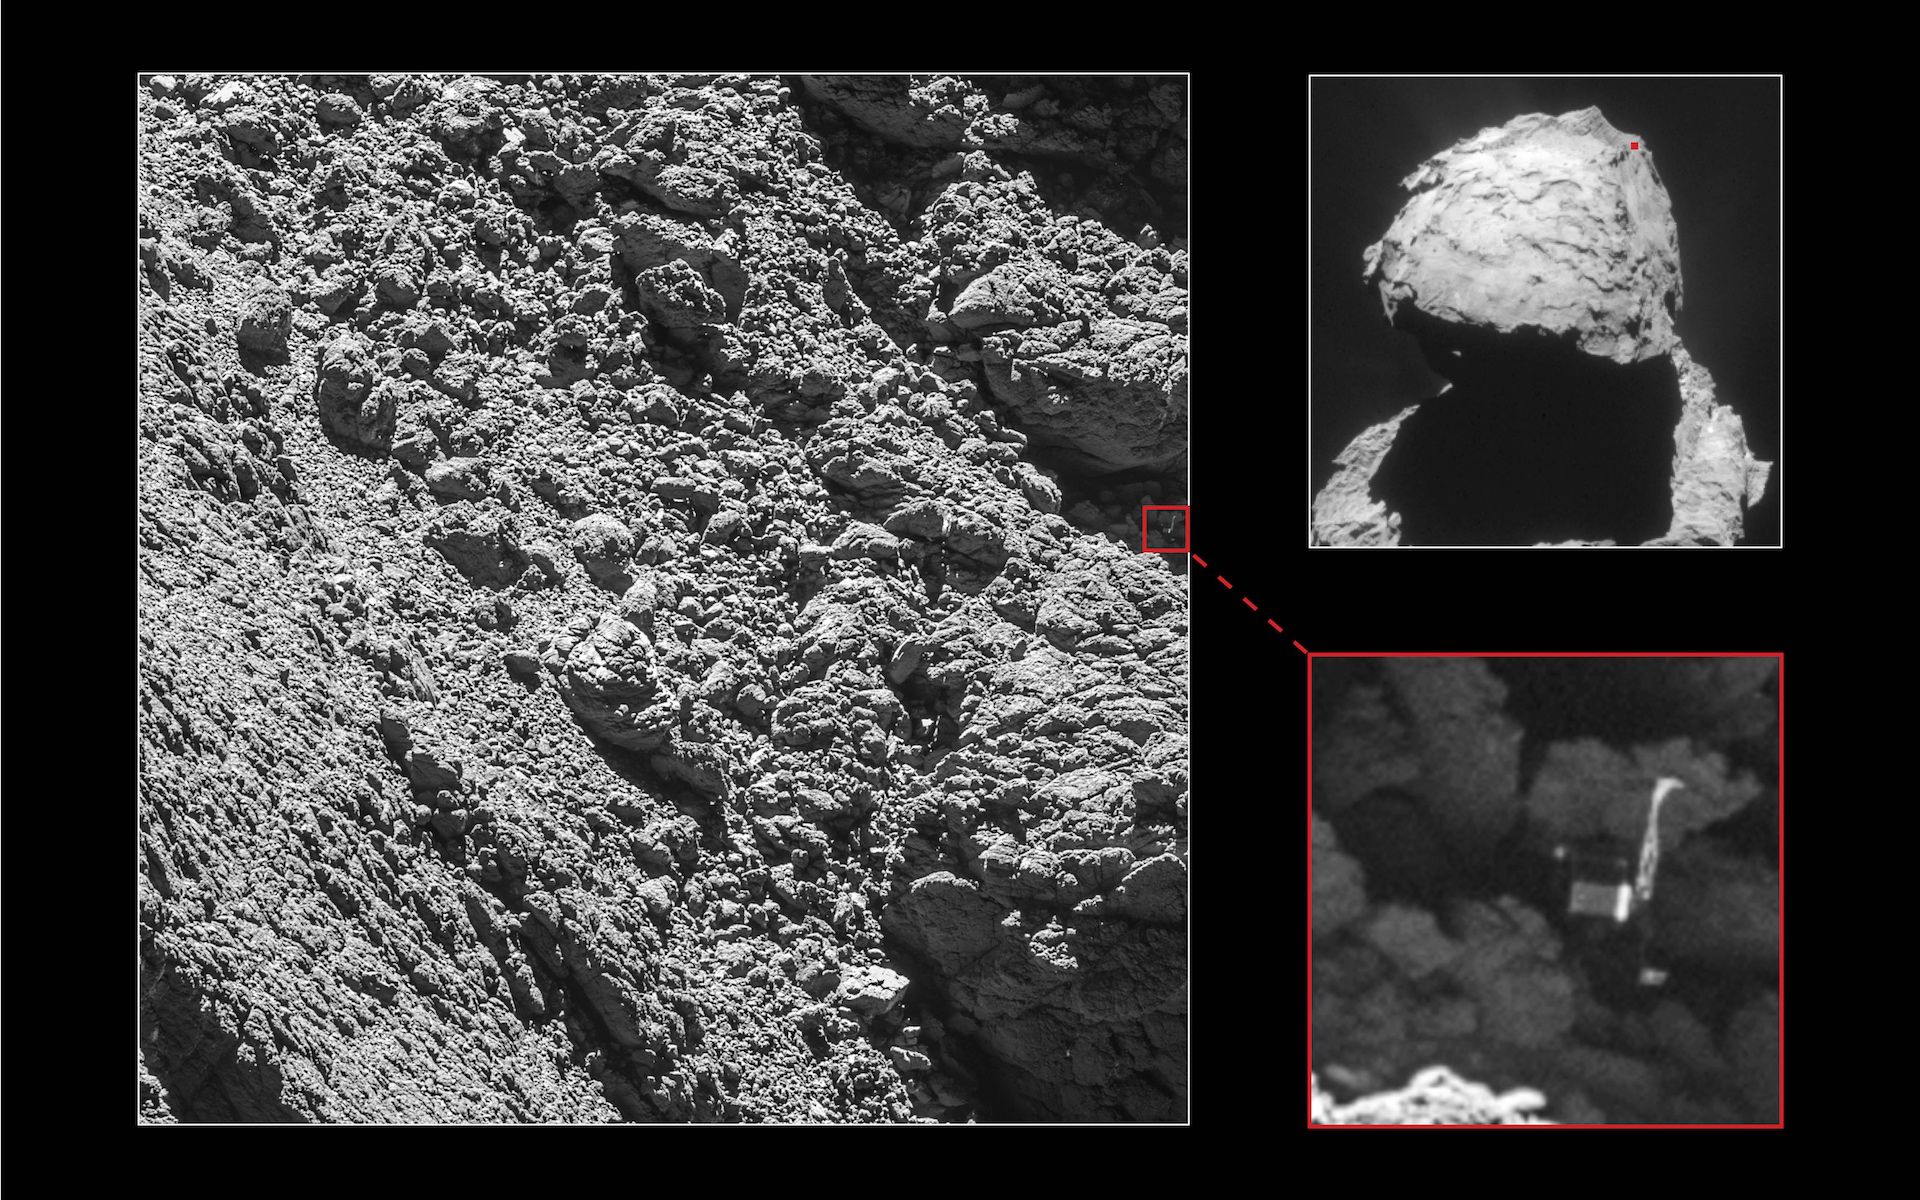 Le robot Philae, large d’un mètre, a été retrouvé sur le noyau de la comète Tchouri à l’endroit supposé par le Cnes. Cette image a été prise par Rosetta le 2 septembre 2016, à 2,7 km de distance. © ESA, Rosetta, MPS for OSIRIS Team MPS, UPD, LAM, IAA, SSO, INTA, UPM, DASP, IDA, NavCam – CC BY-SA IGO 3.0